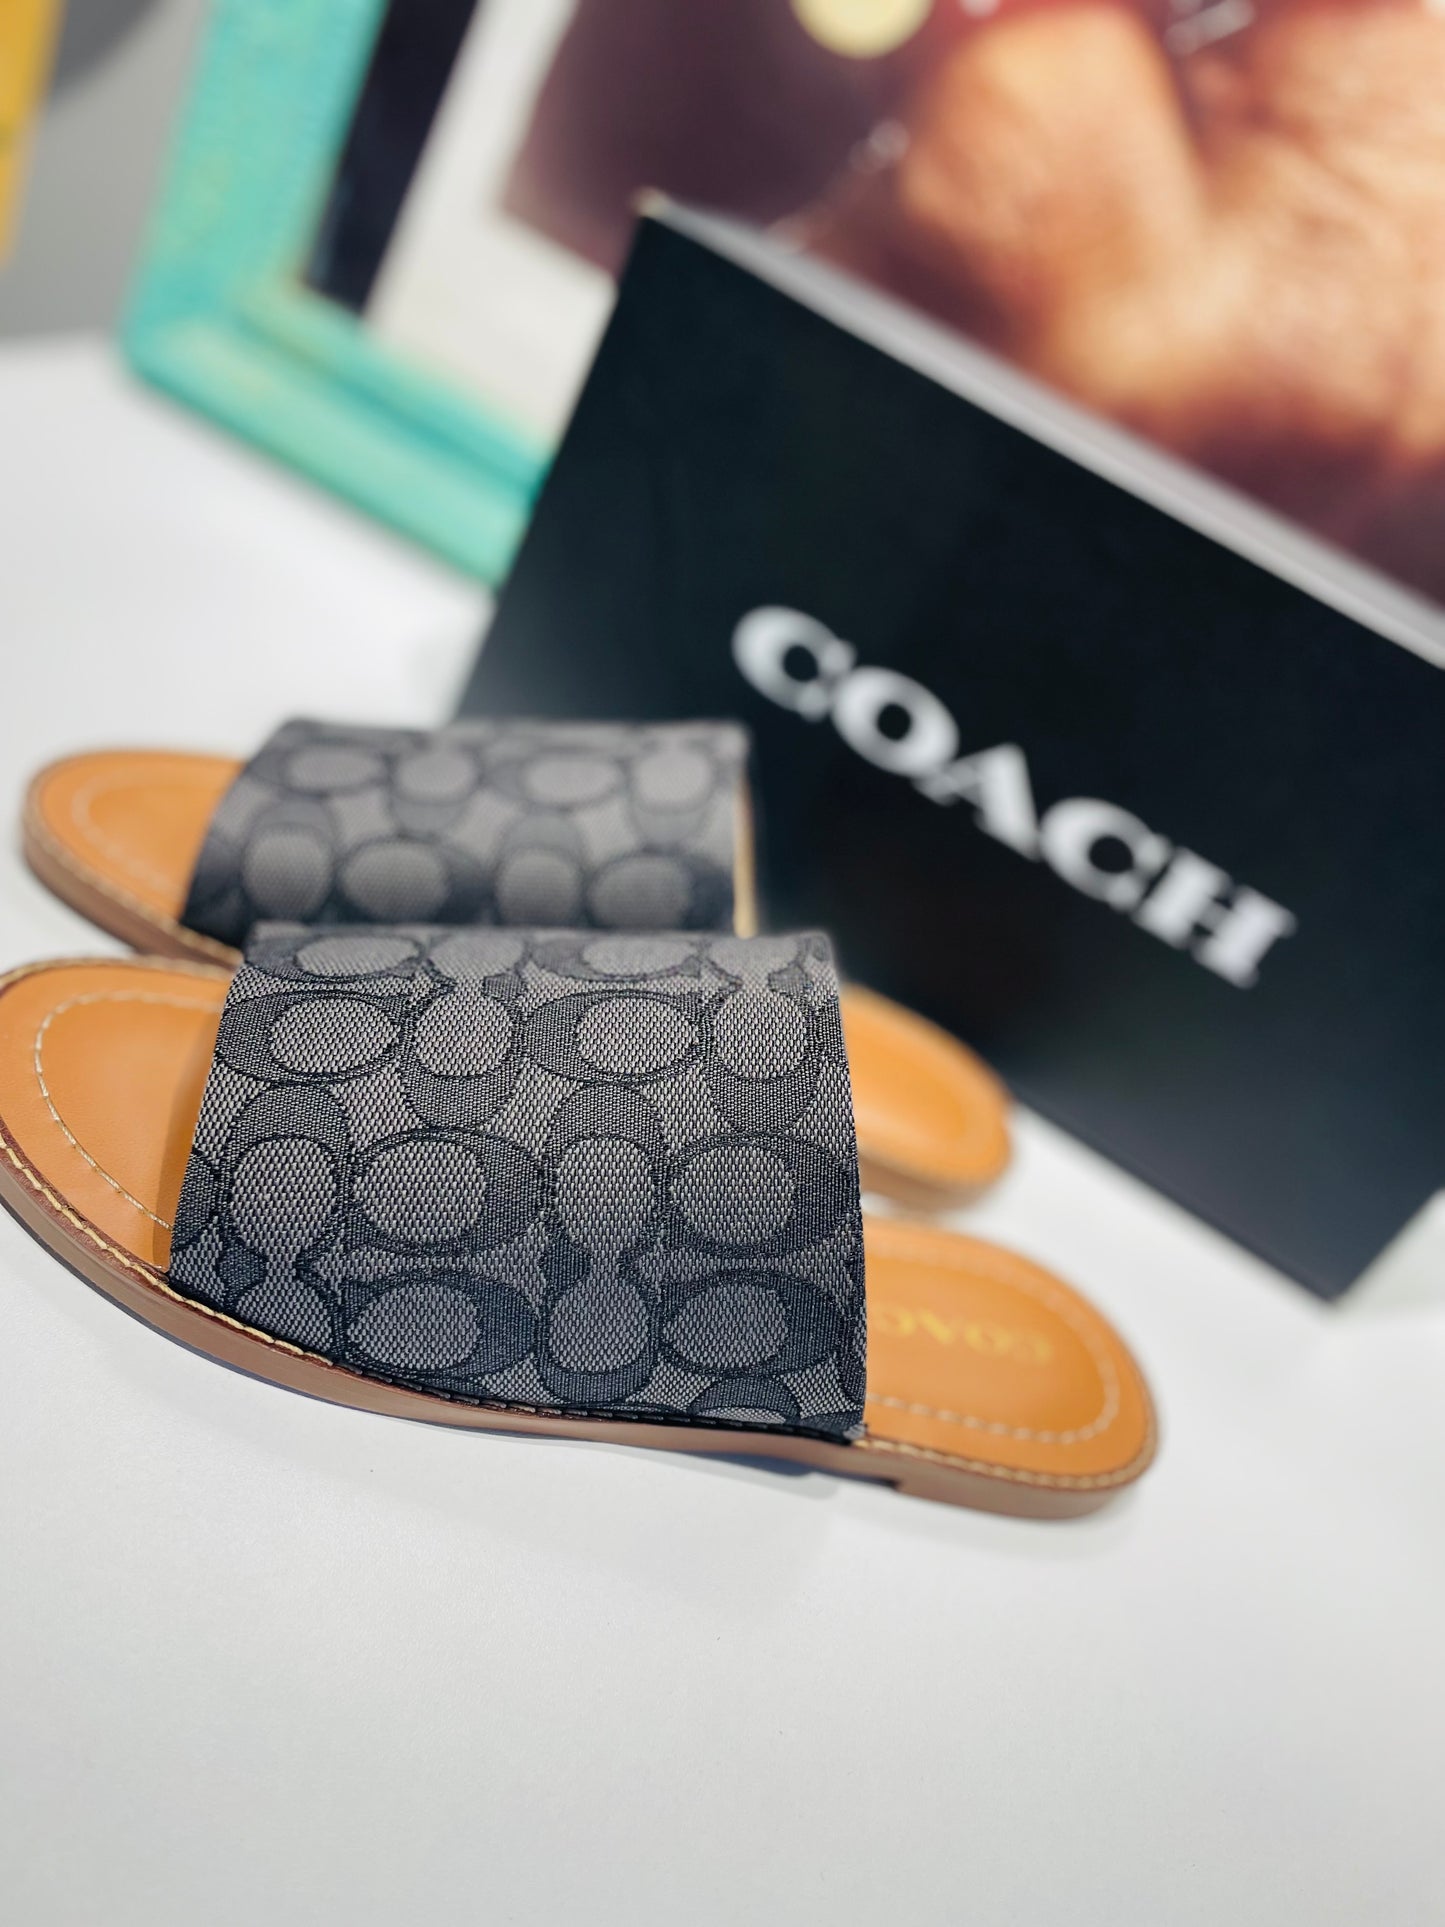 Coach sandal